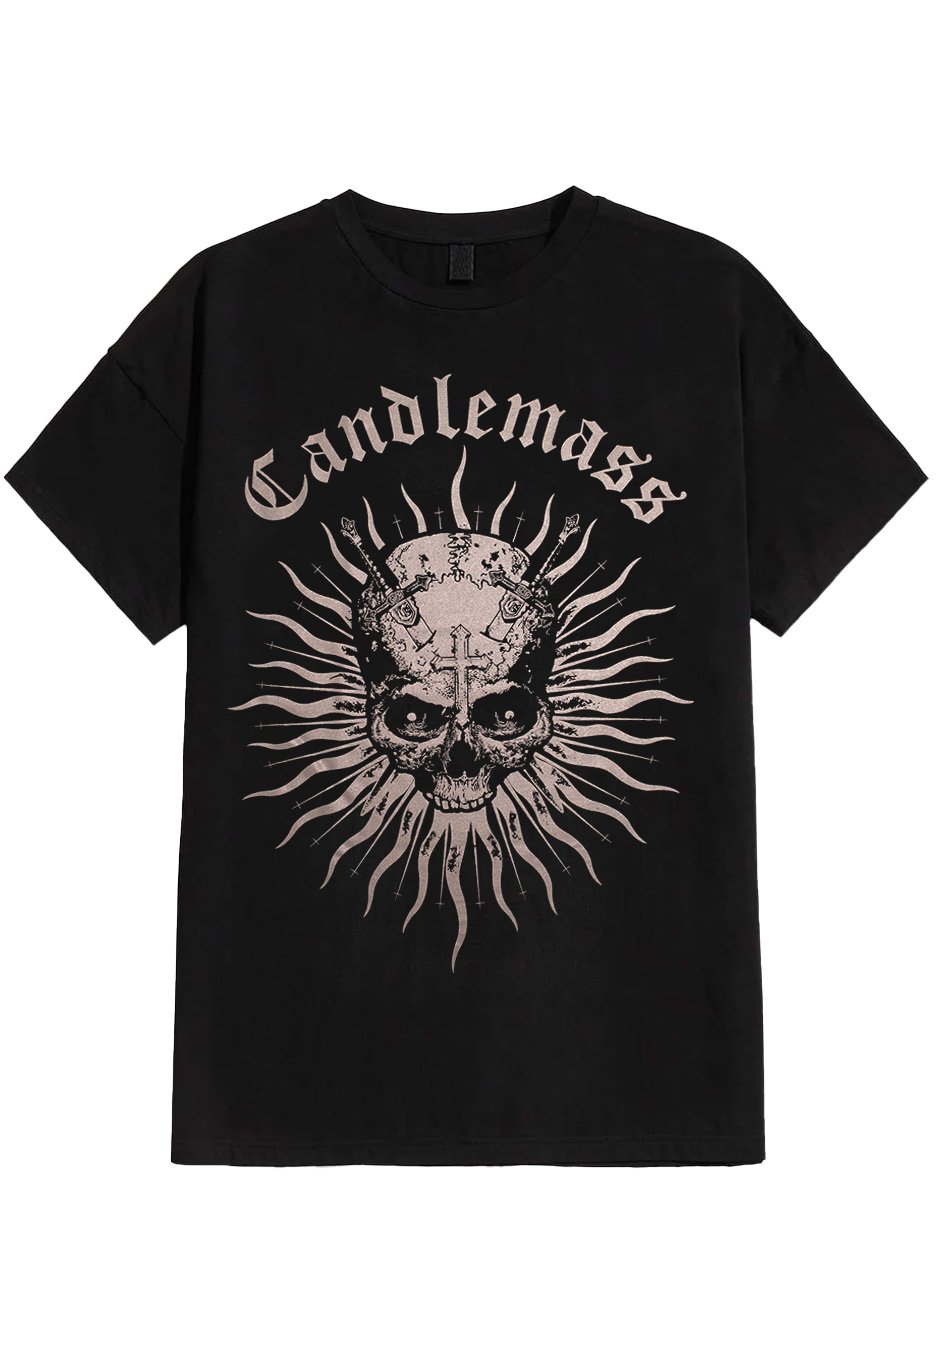 Candlemass - Sweet Evil Sun - T-Shirt